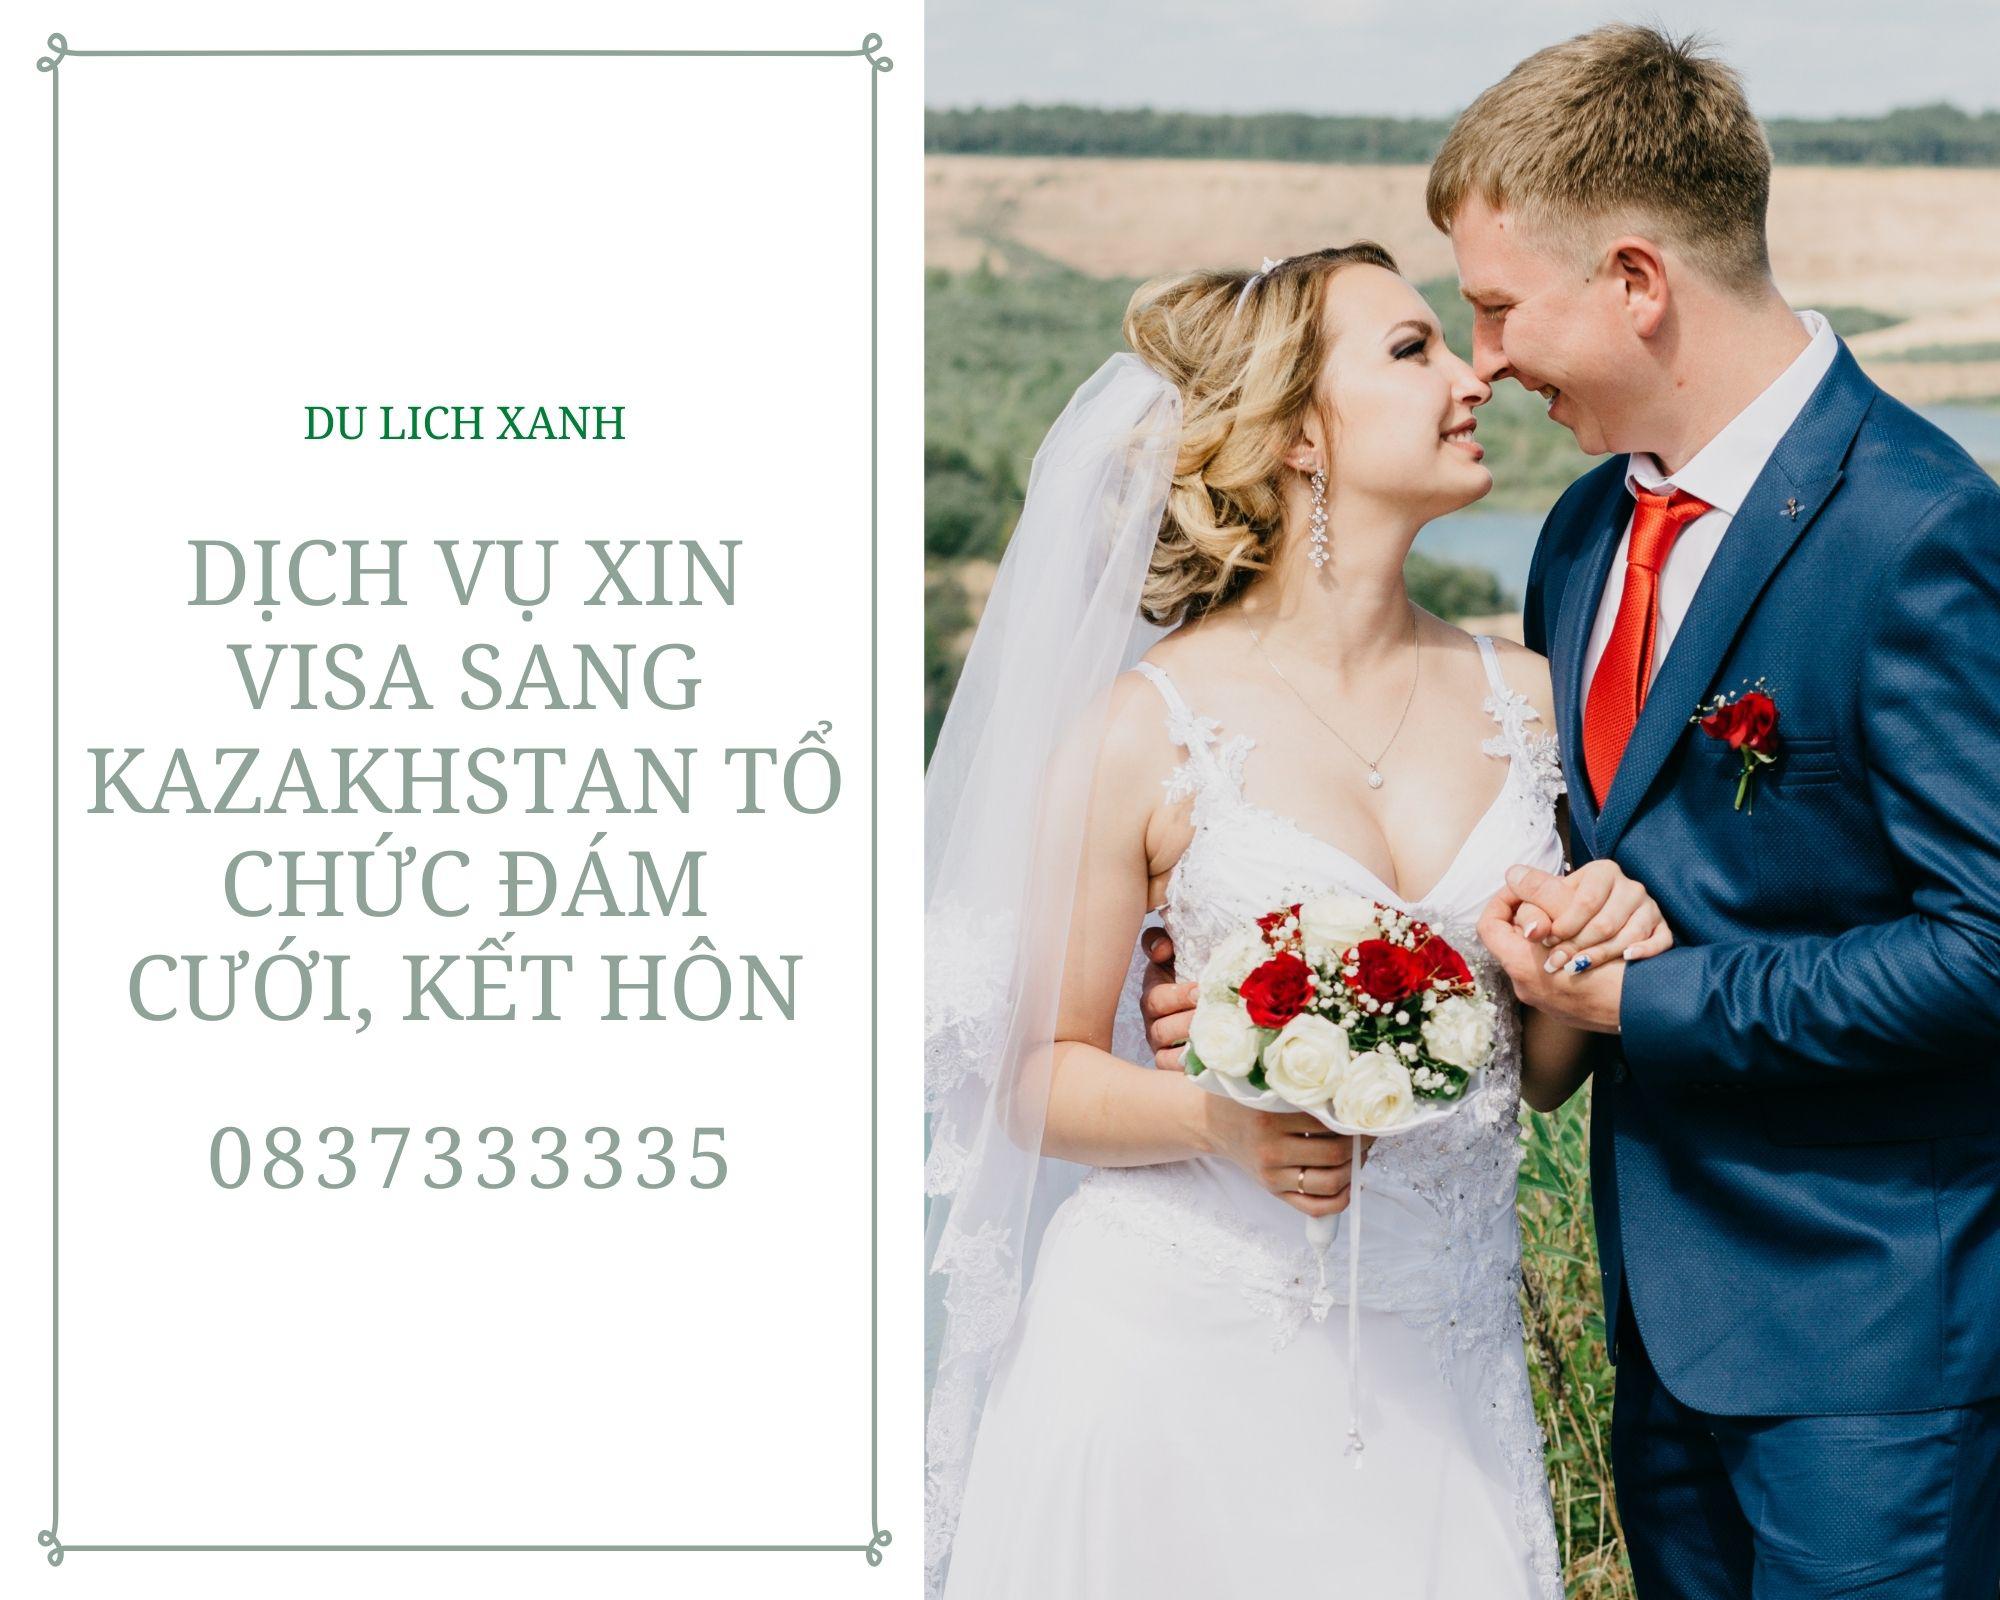 Dịch vụ xin Visa sang Kazakhstan tổ chức đám cưới, kết hôn